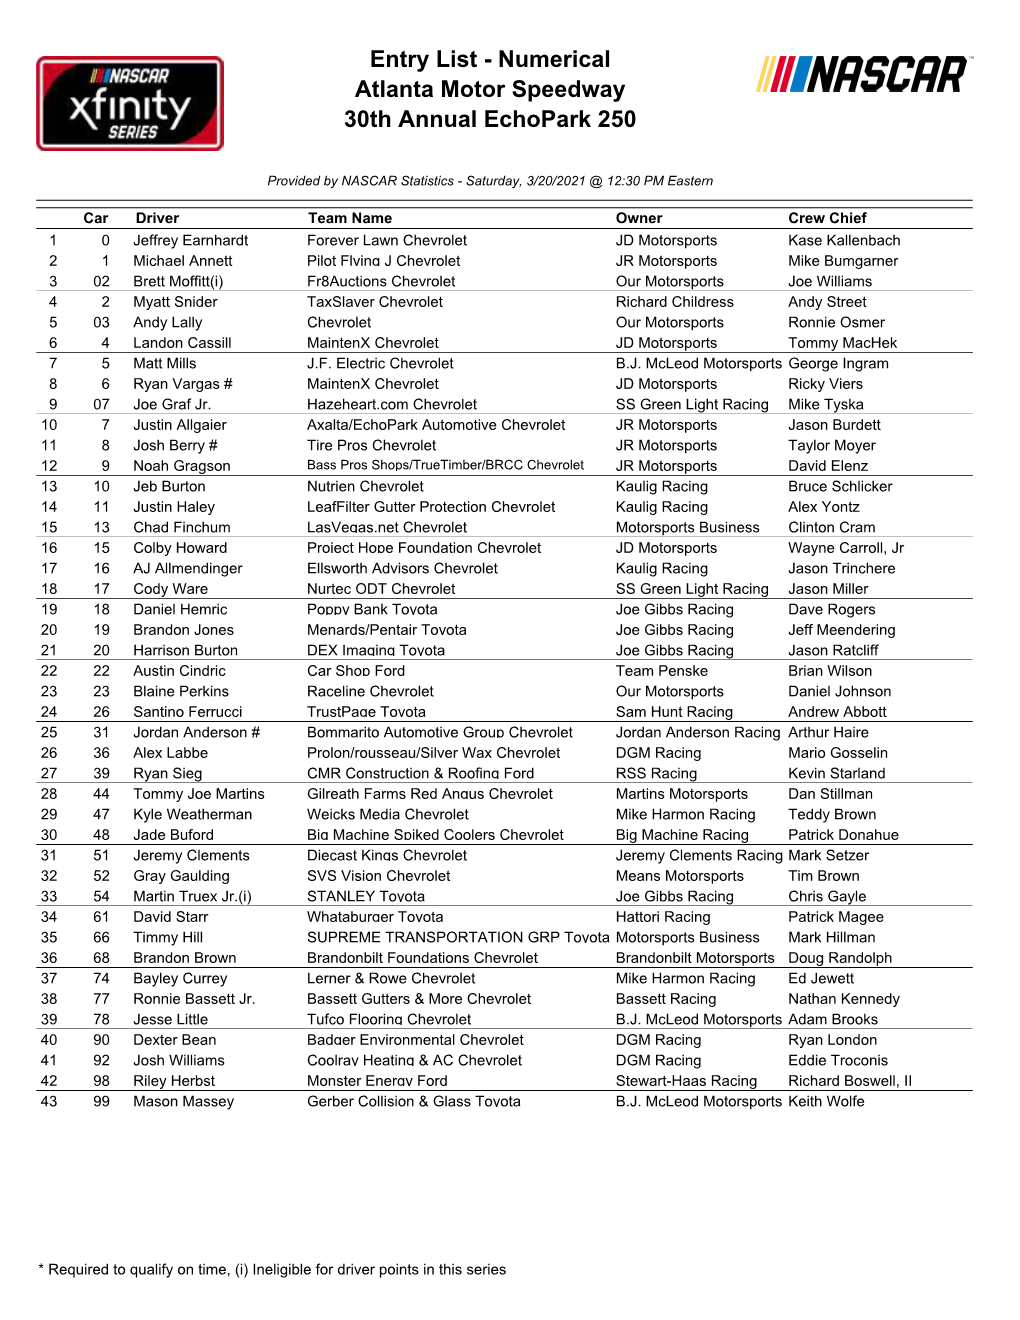 Entry List - Numerical Atlanta Motor Speedway 30Th Annual Echopark 250